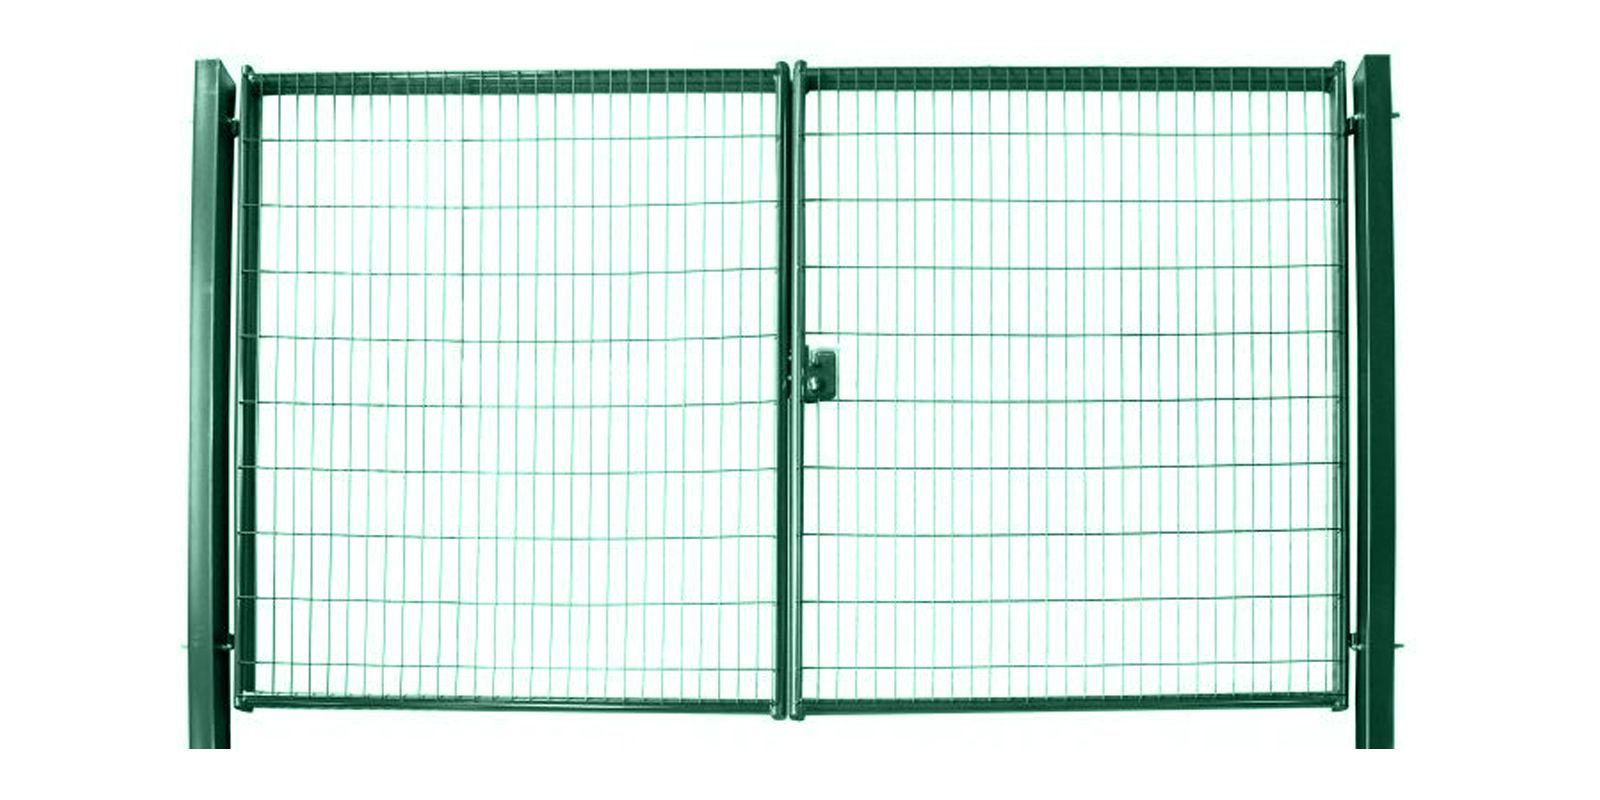 Купить Ворота для панельного ограждения Medium шириной 4,00 м с высотой сетки 1,73 м в цвете RAL 6005